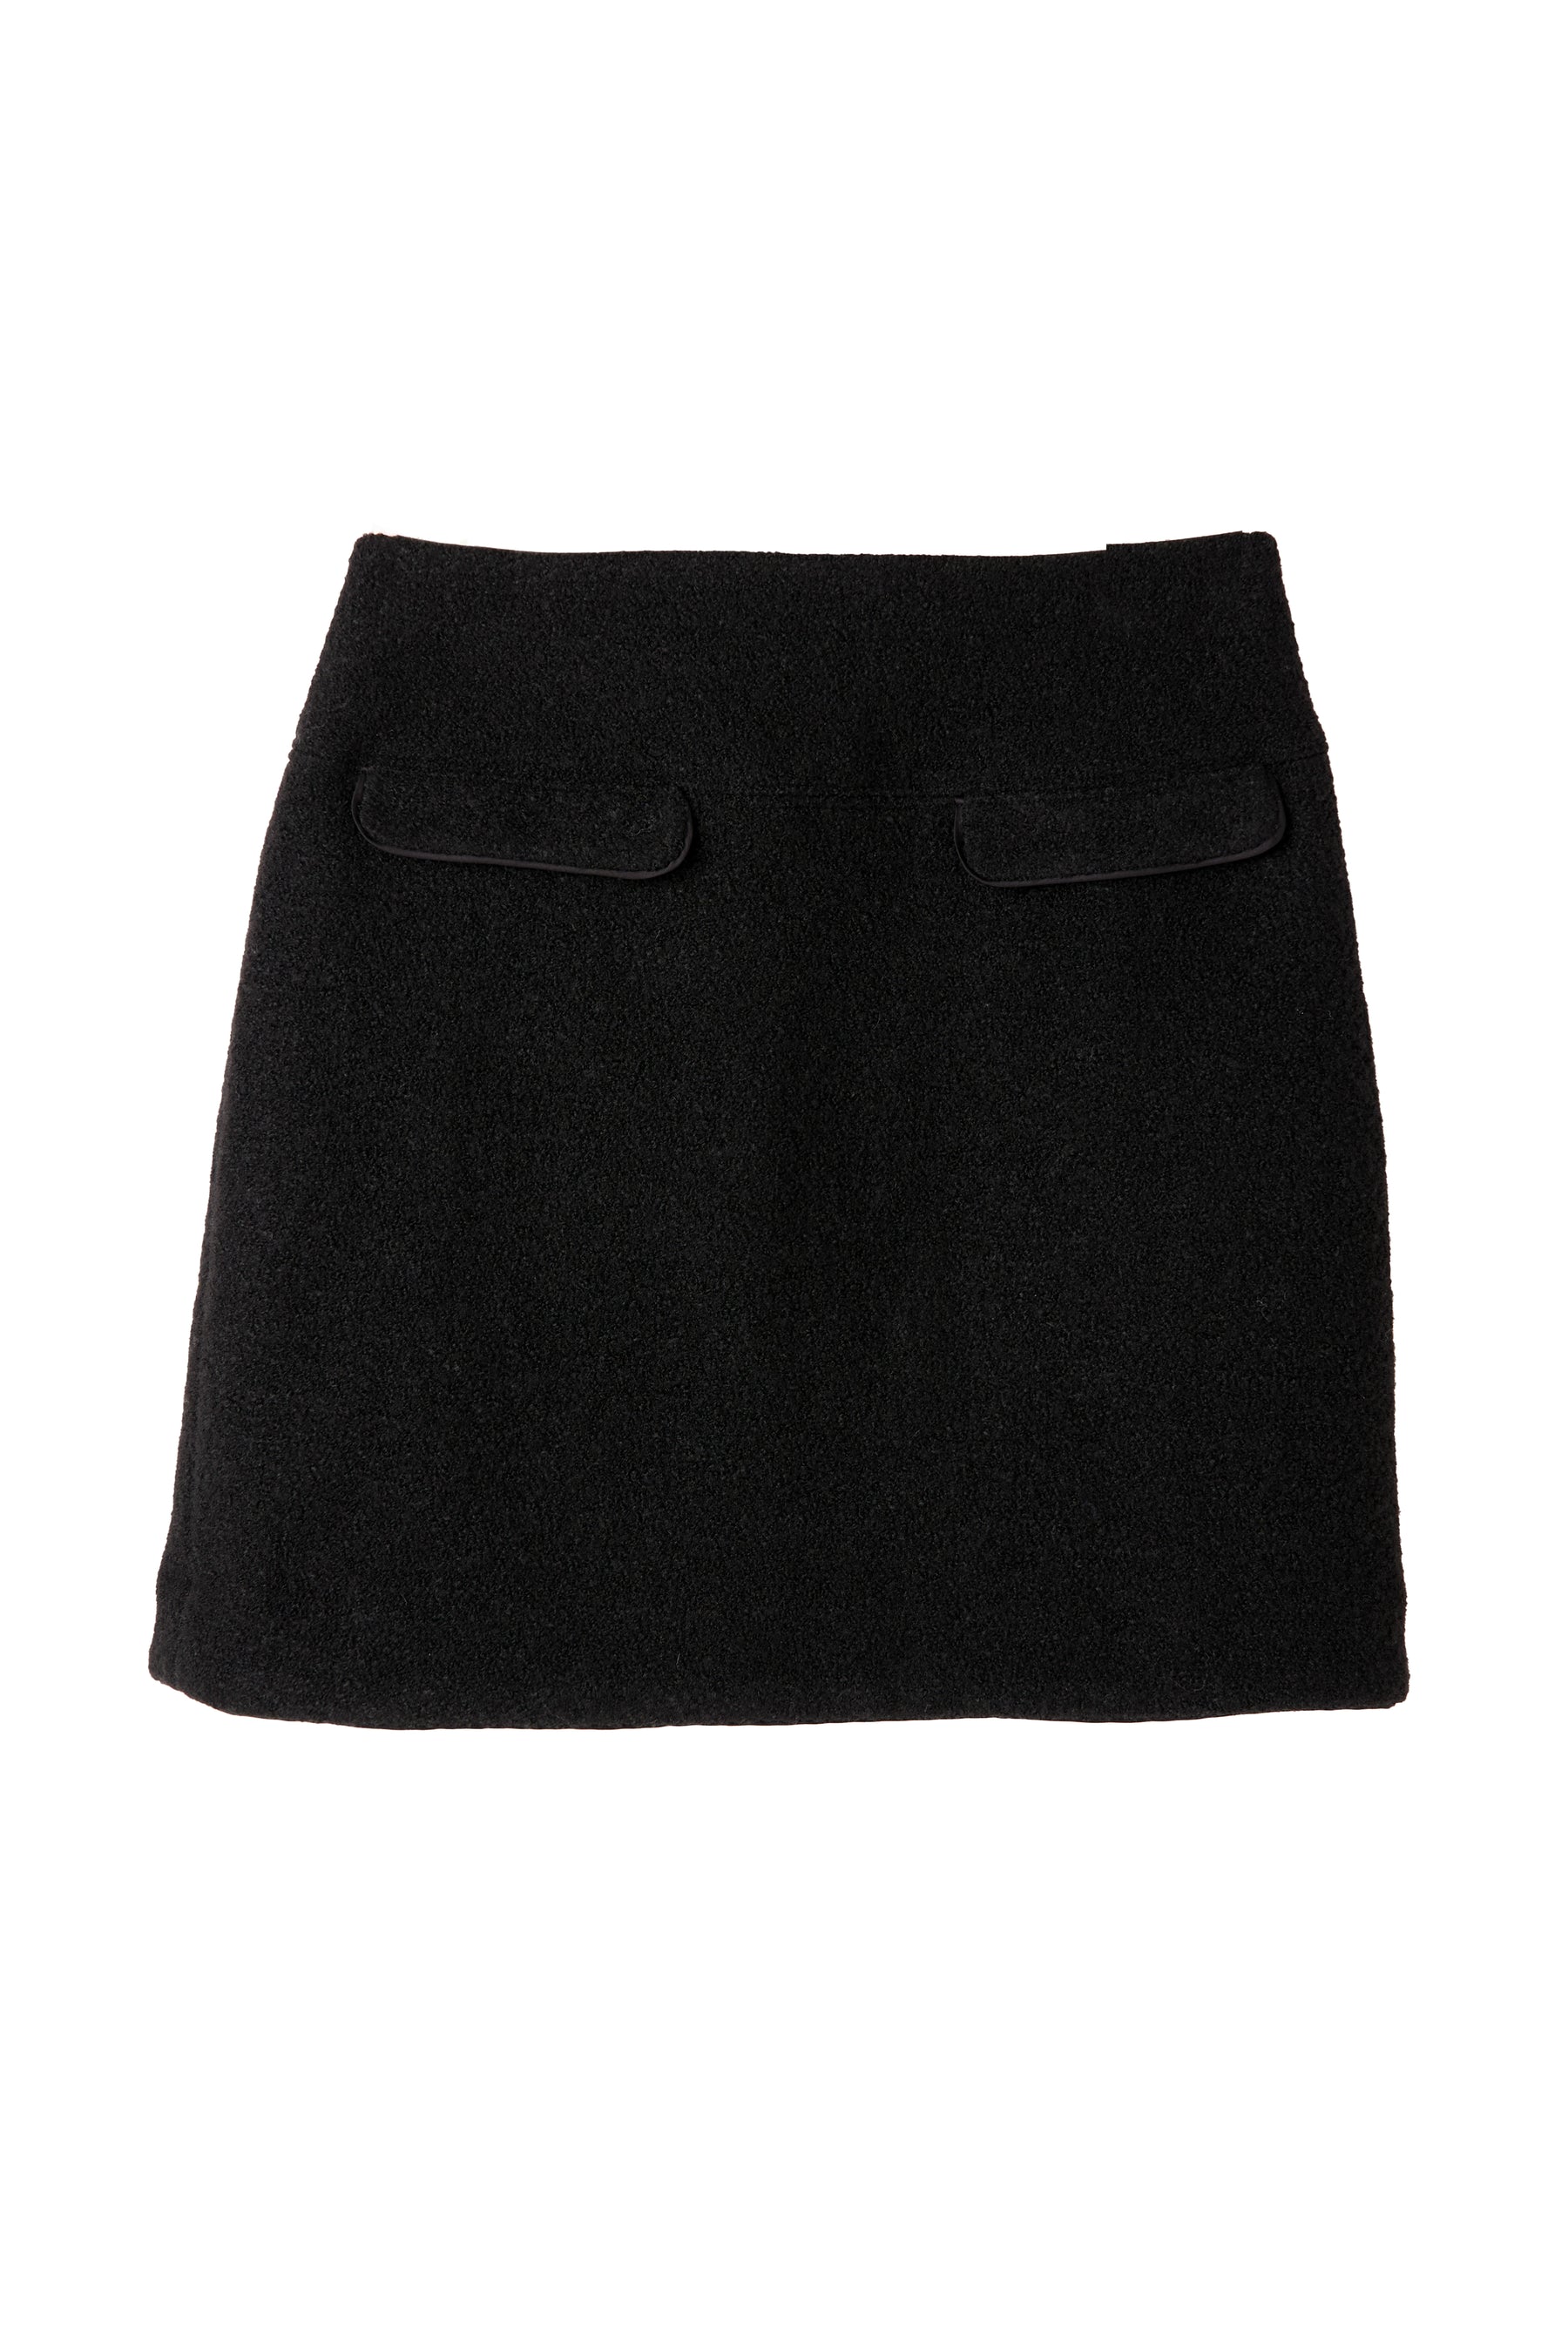 herlipto / Hemingway Check Tweed Skirt出品することにしました 